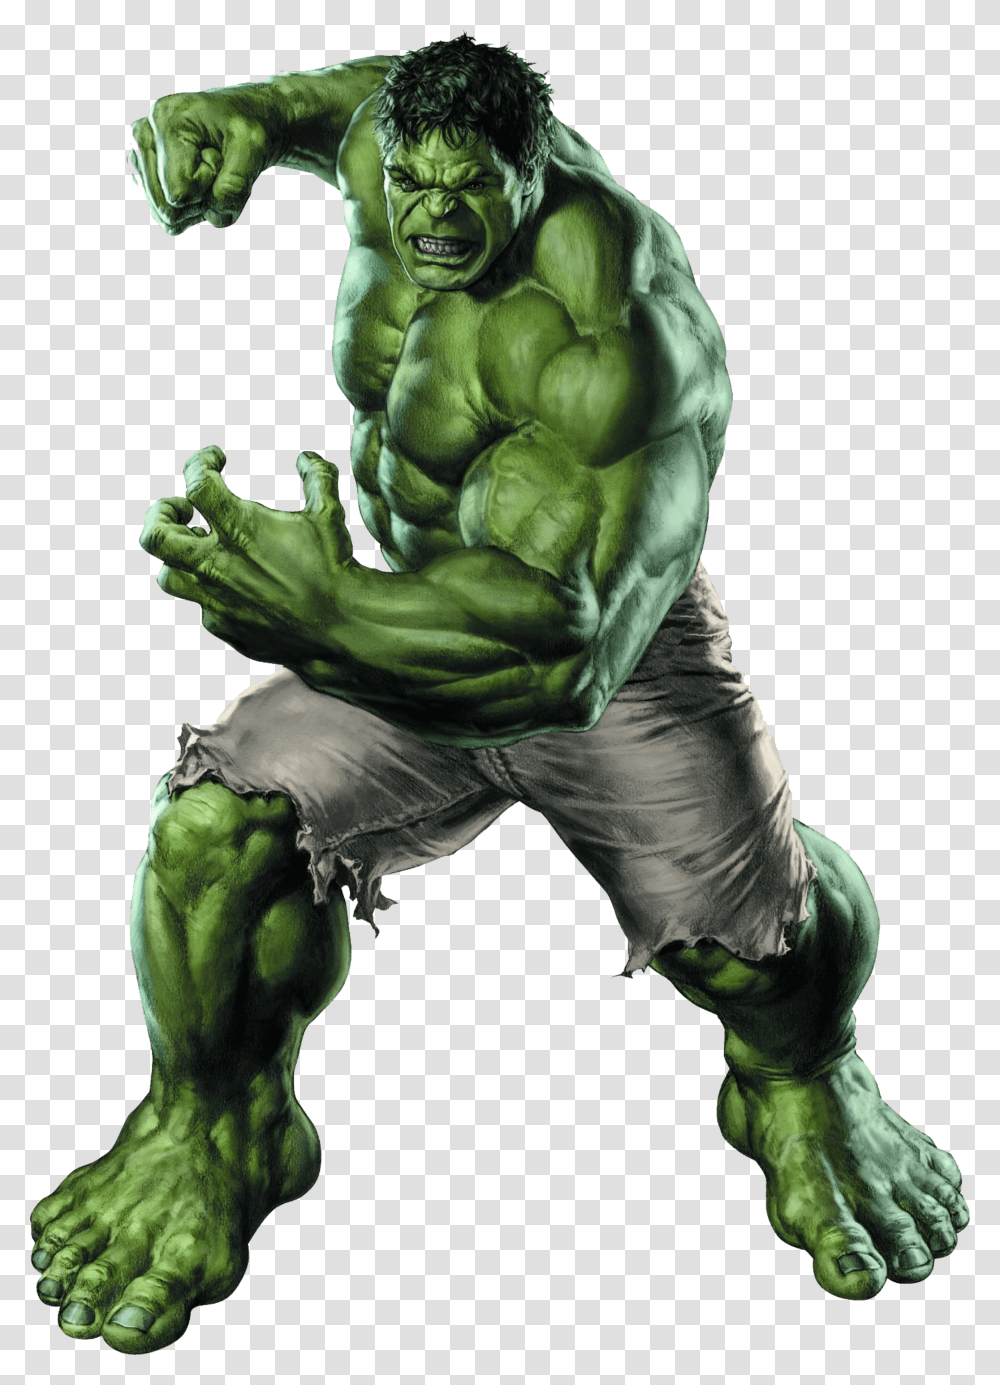 Hulk Artengenho Hulk, Person, Human, Hand, Ape Transparent Png